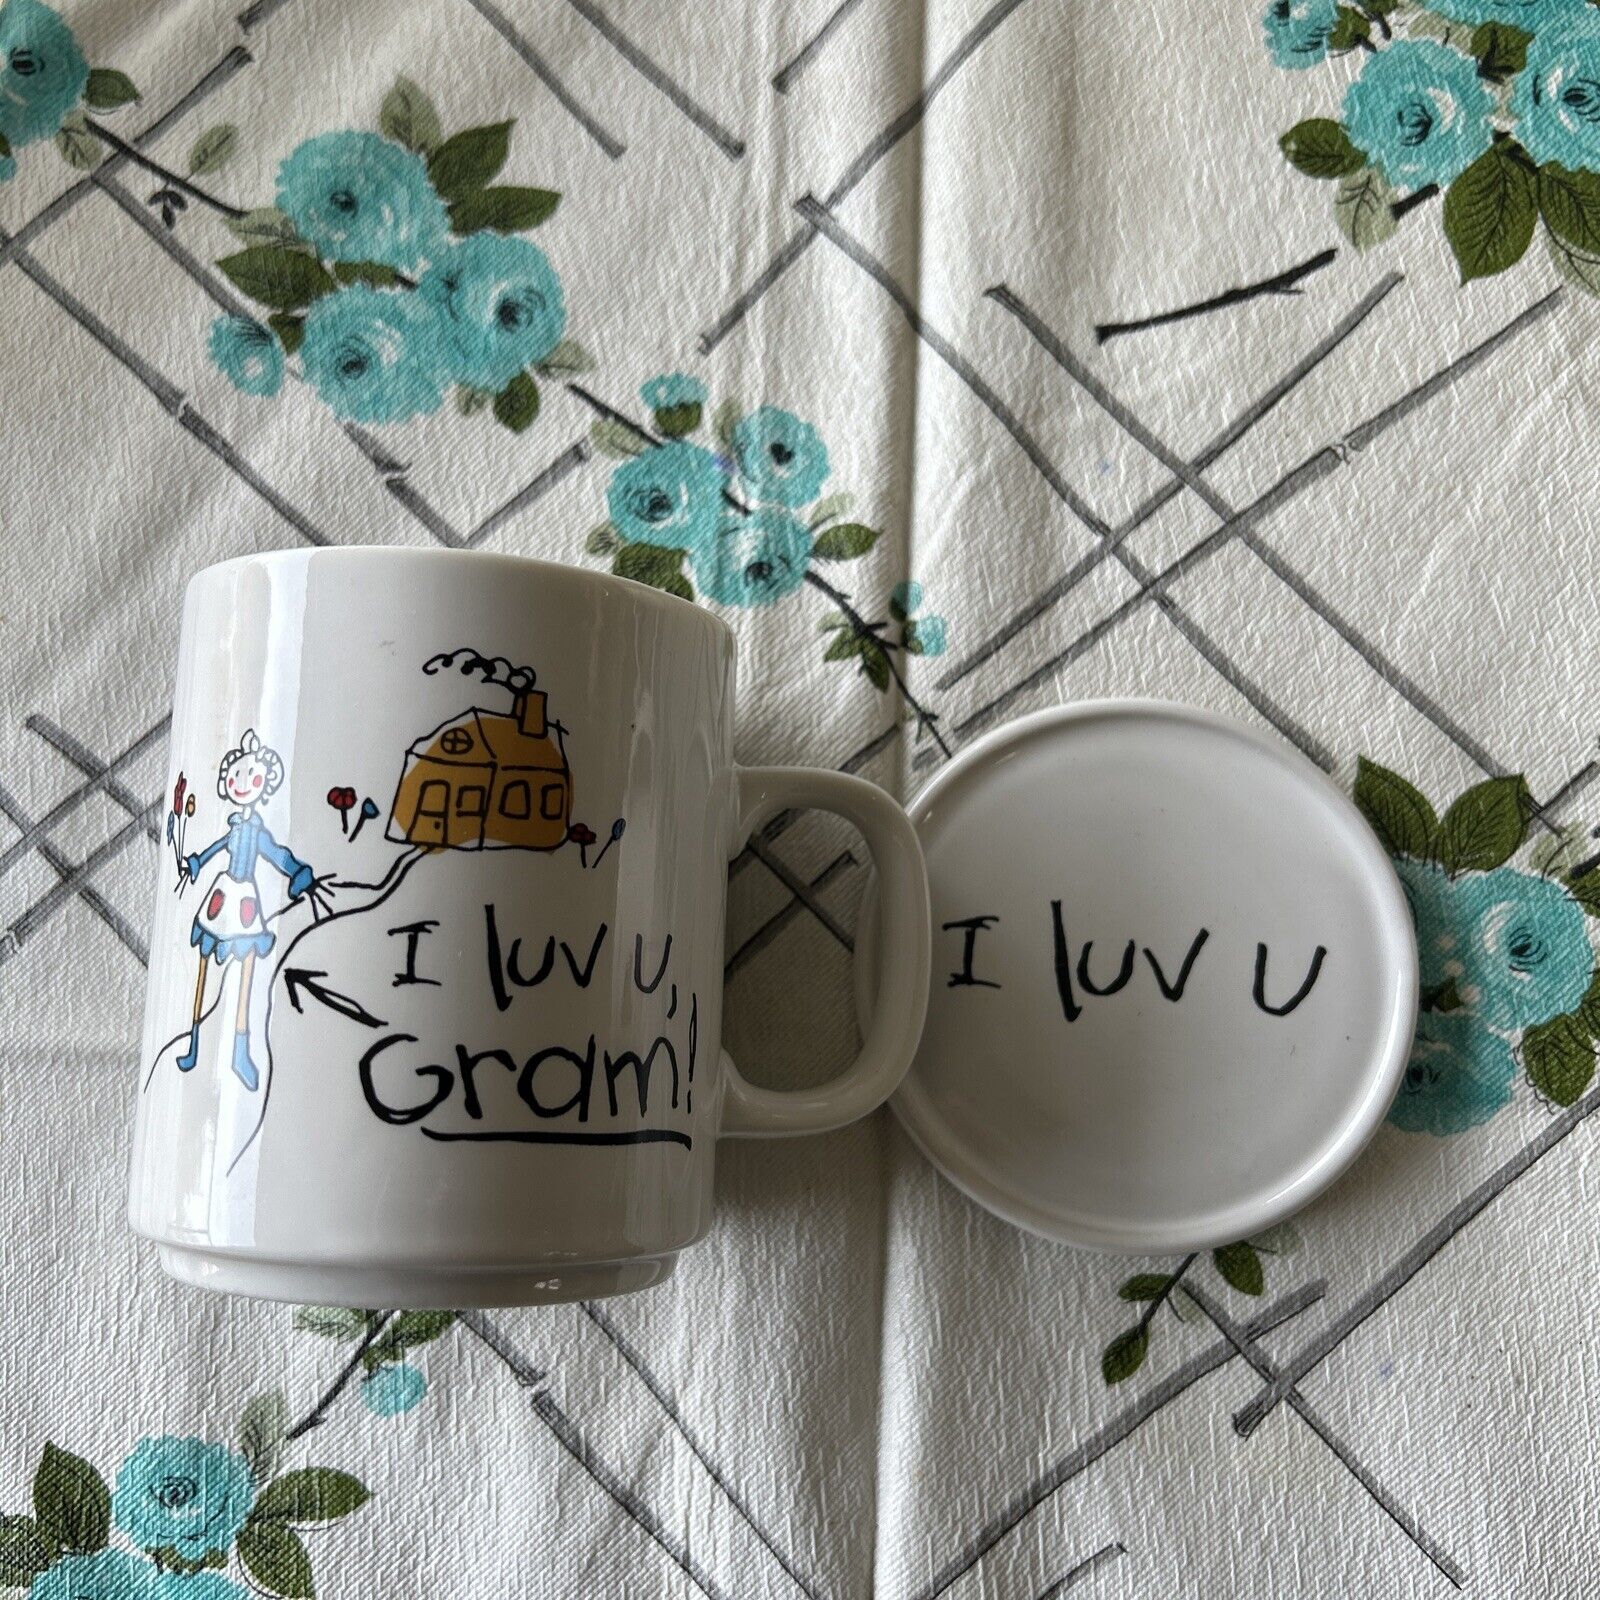 Vintage Mug I Luv U Gram Mug Coaster Set 1987 Japan coffee cup with coaster lid